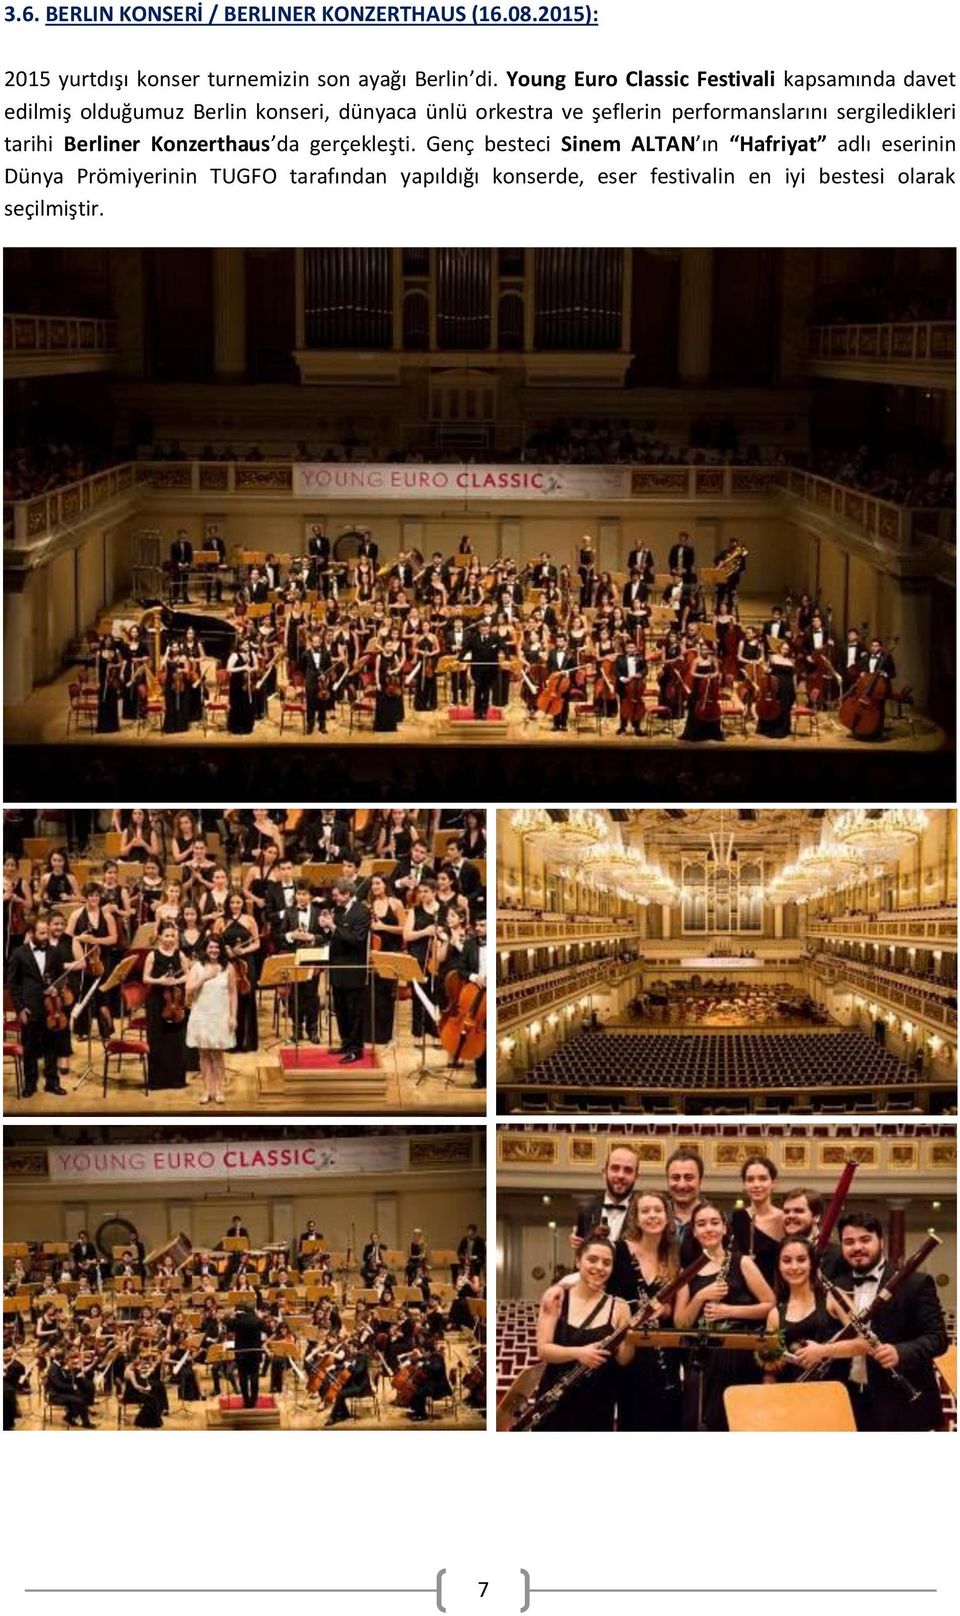 performanslarını sergiledikleri tarihi Berliner Konzerthaus da gerçekleşti.